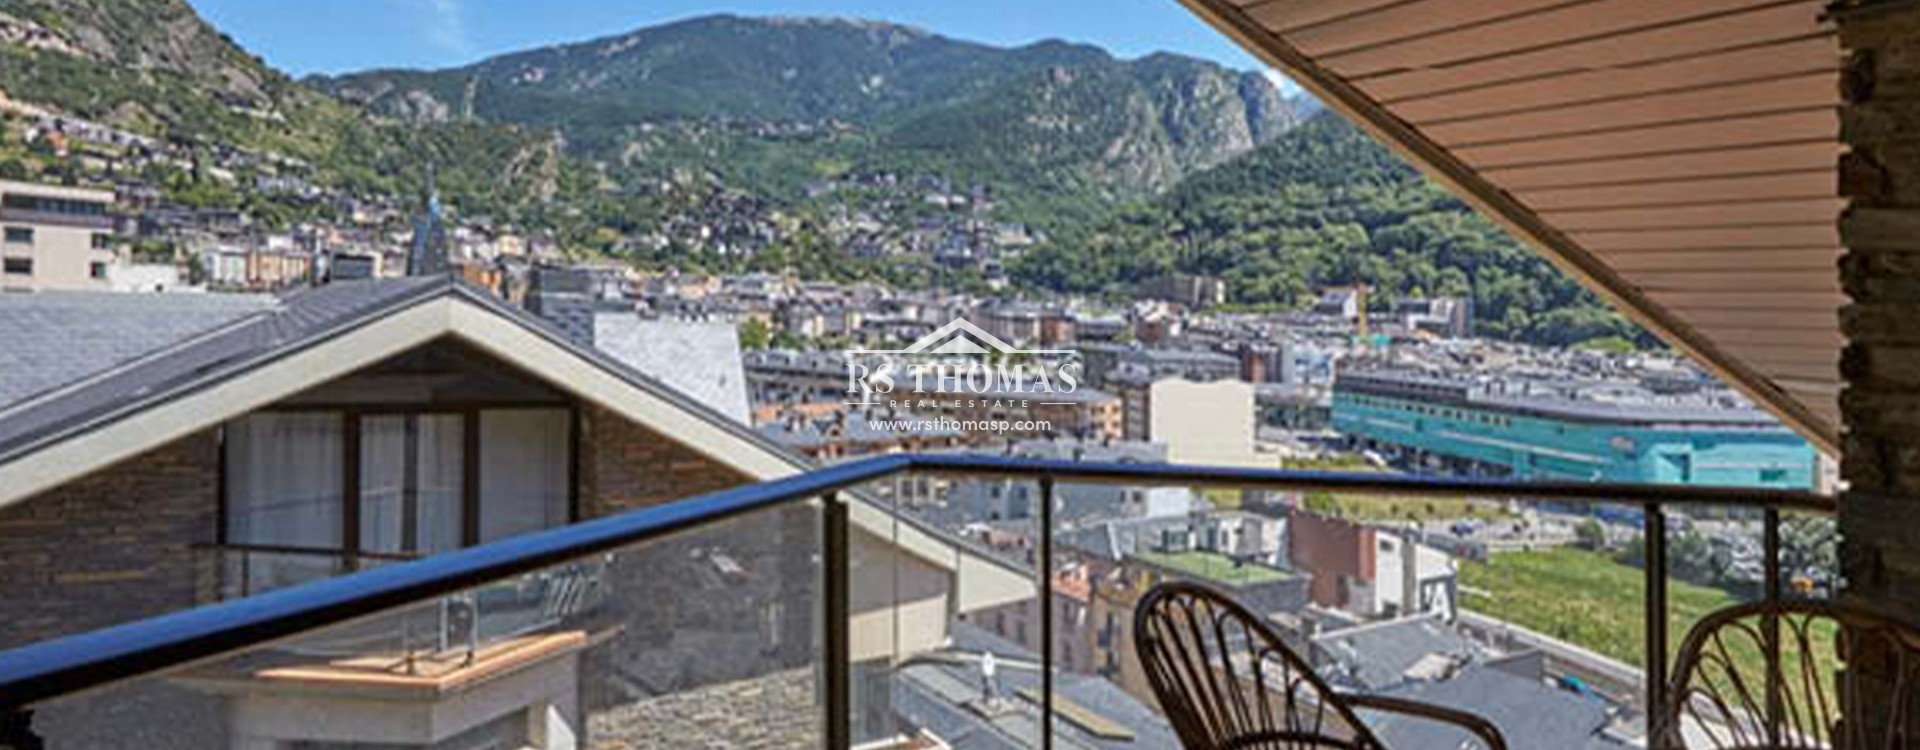 Àtic per comprar Andorra La Vella